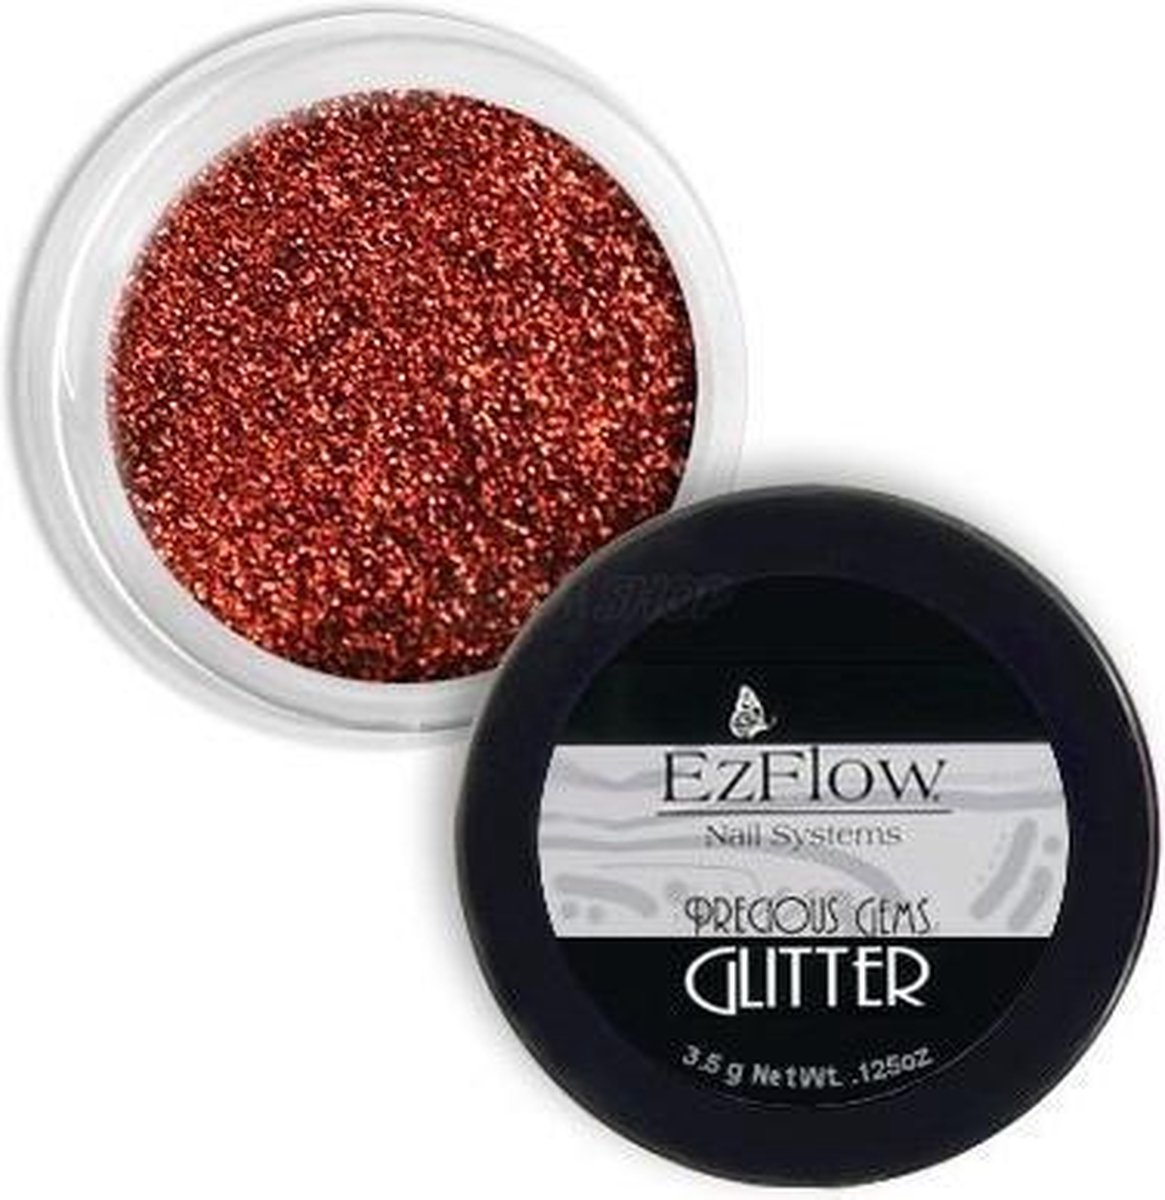 EzFlow Precious Gems Glitter - Fire Opal - 0.125oz / 3.5g by EzFlow